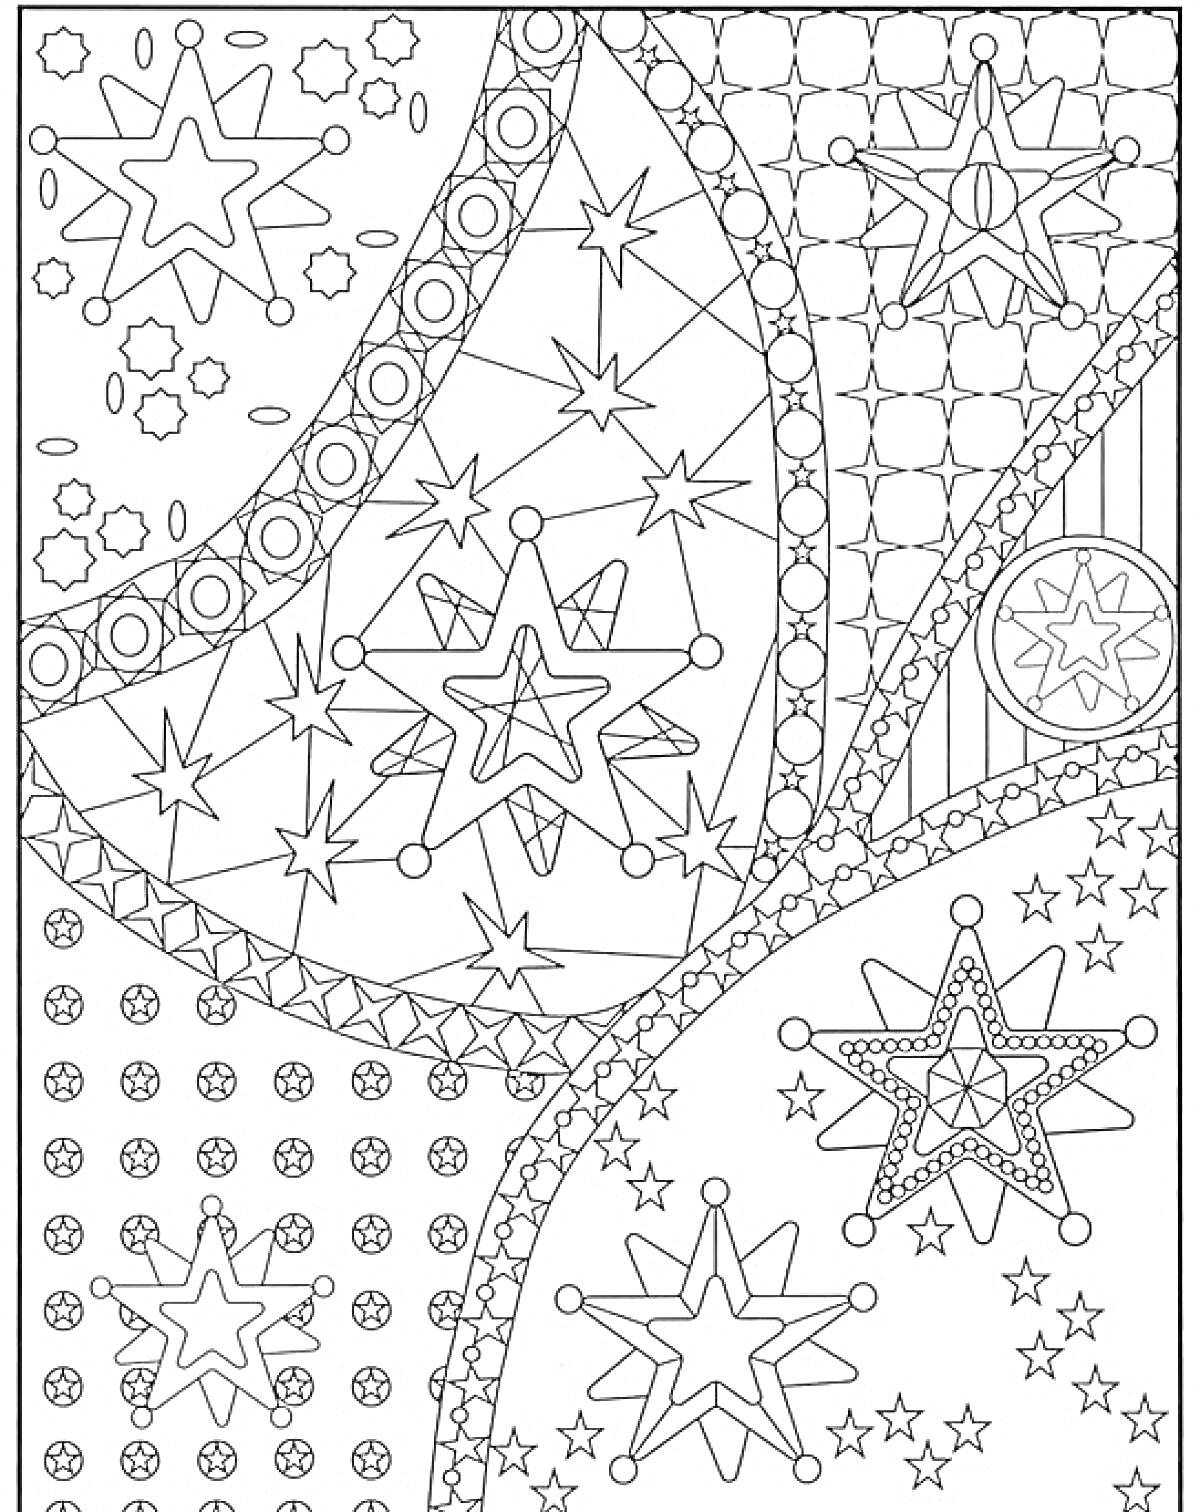 Раскраска Раскраска с узорами, включающая звезды, круги, точки, полосы и переплетенные линии